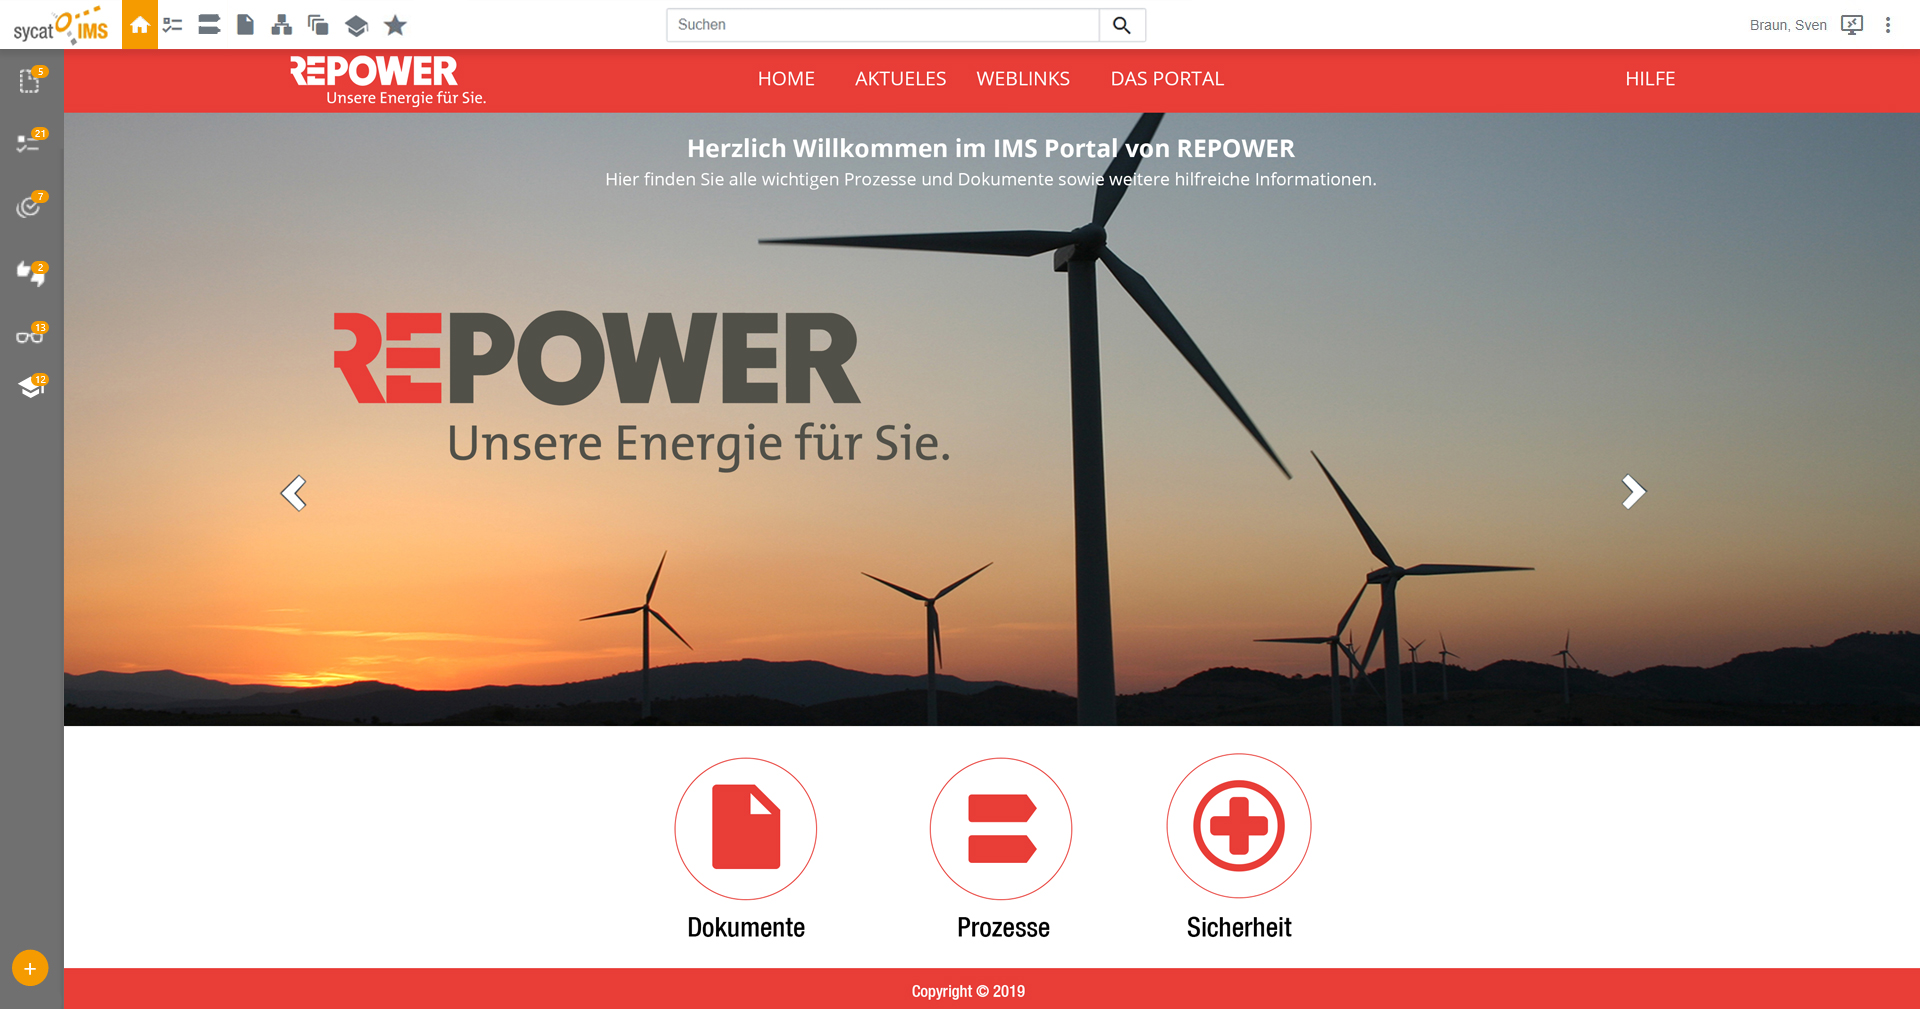 sycat IMS Portal Startseite bei der Repower AG